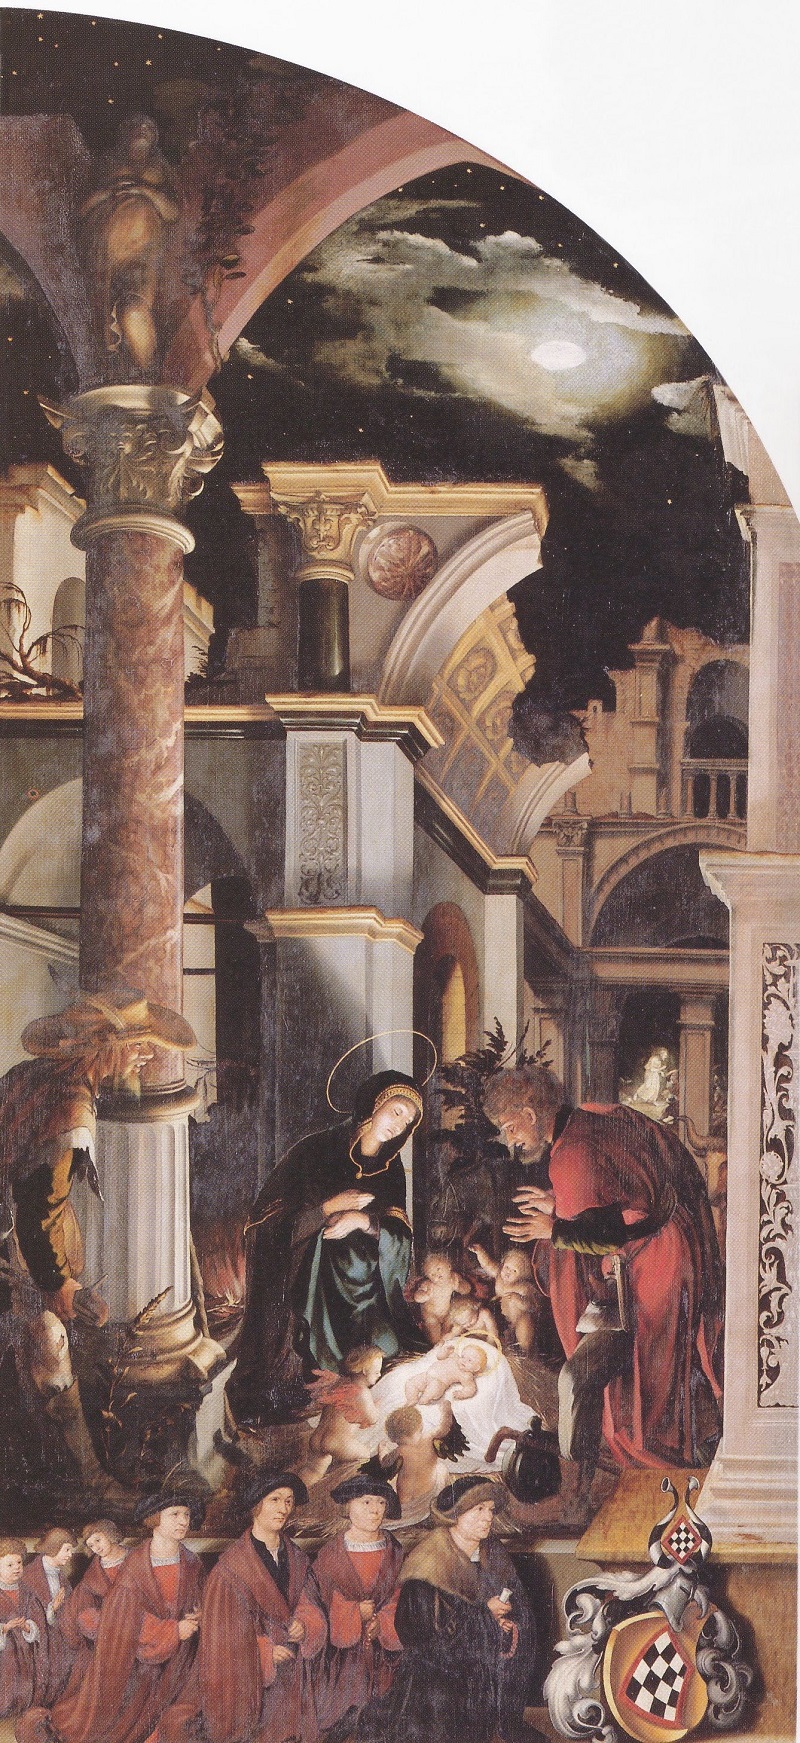 1525-29 hans_holbein_nativity oberried altarpiece Freiburg im Breisgau